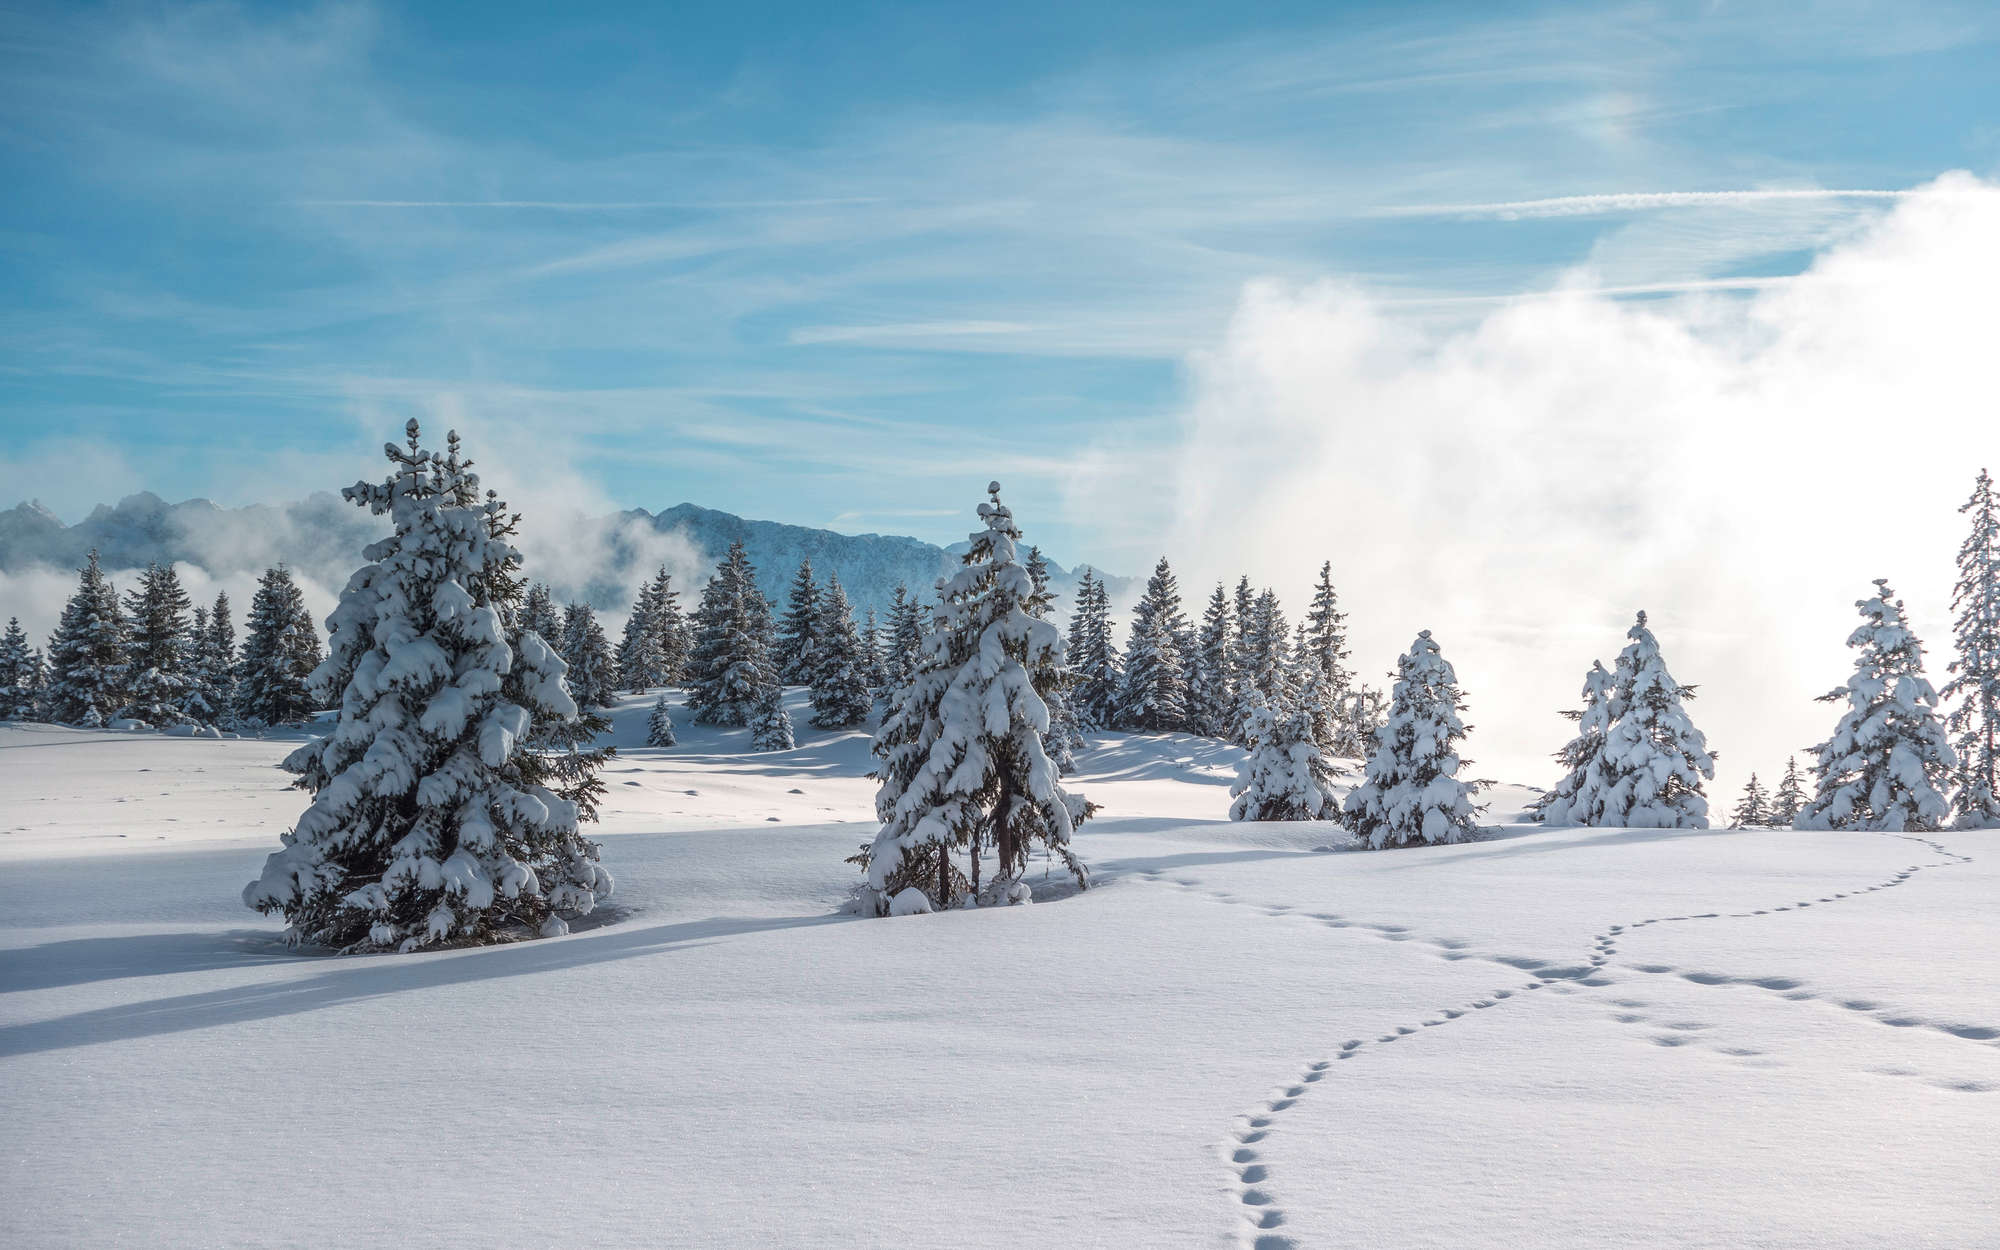             Fototapete Schnee und Fußspuren im Winterwald – Perlmutt Glattvlies
        